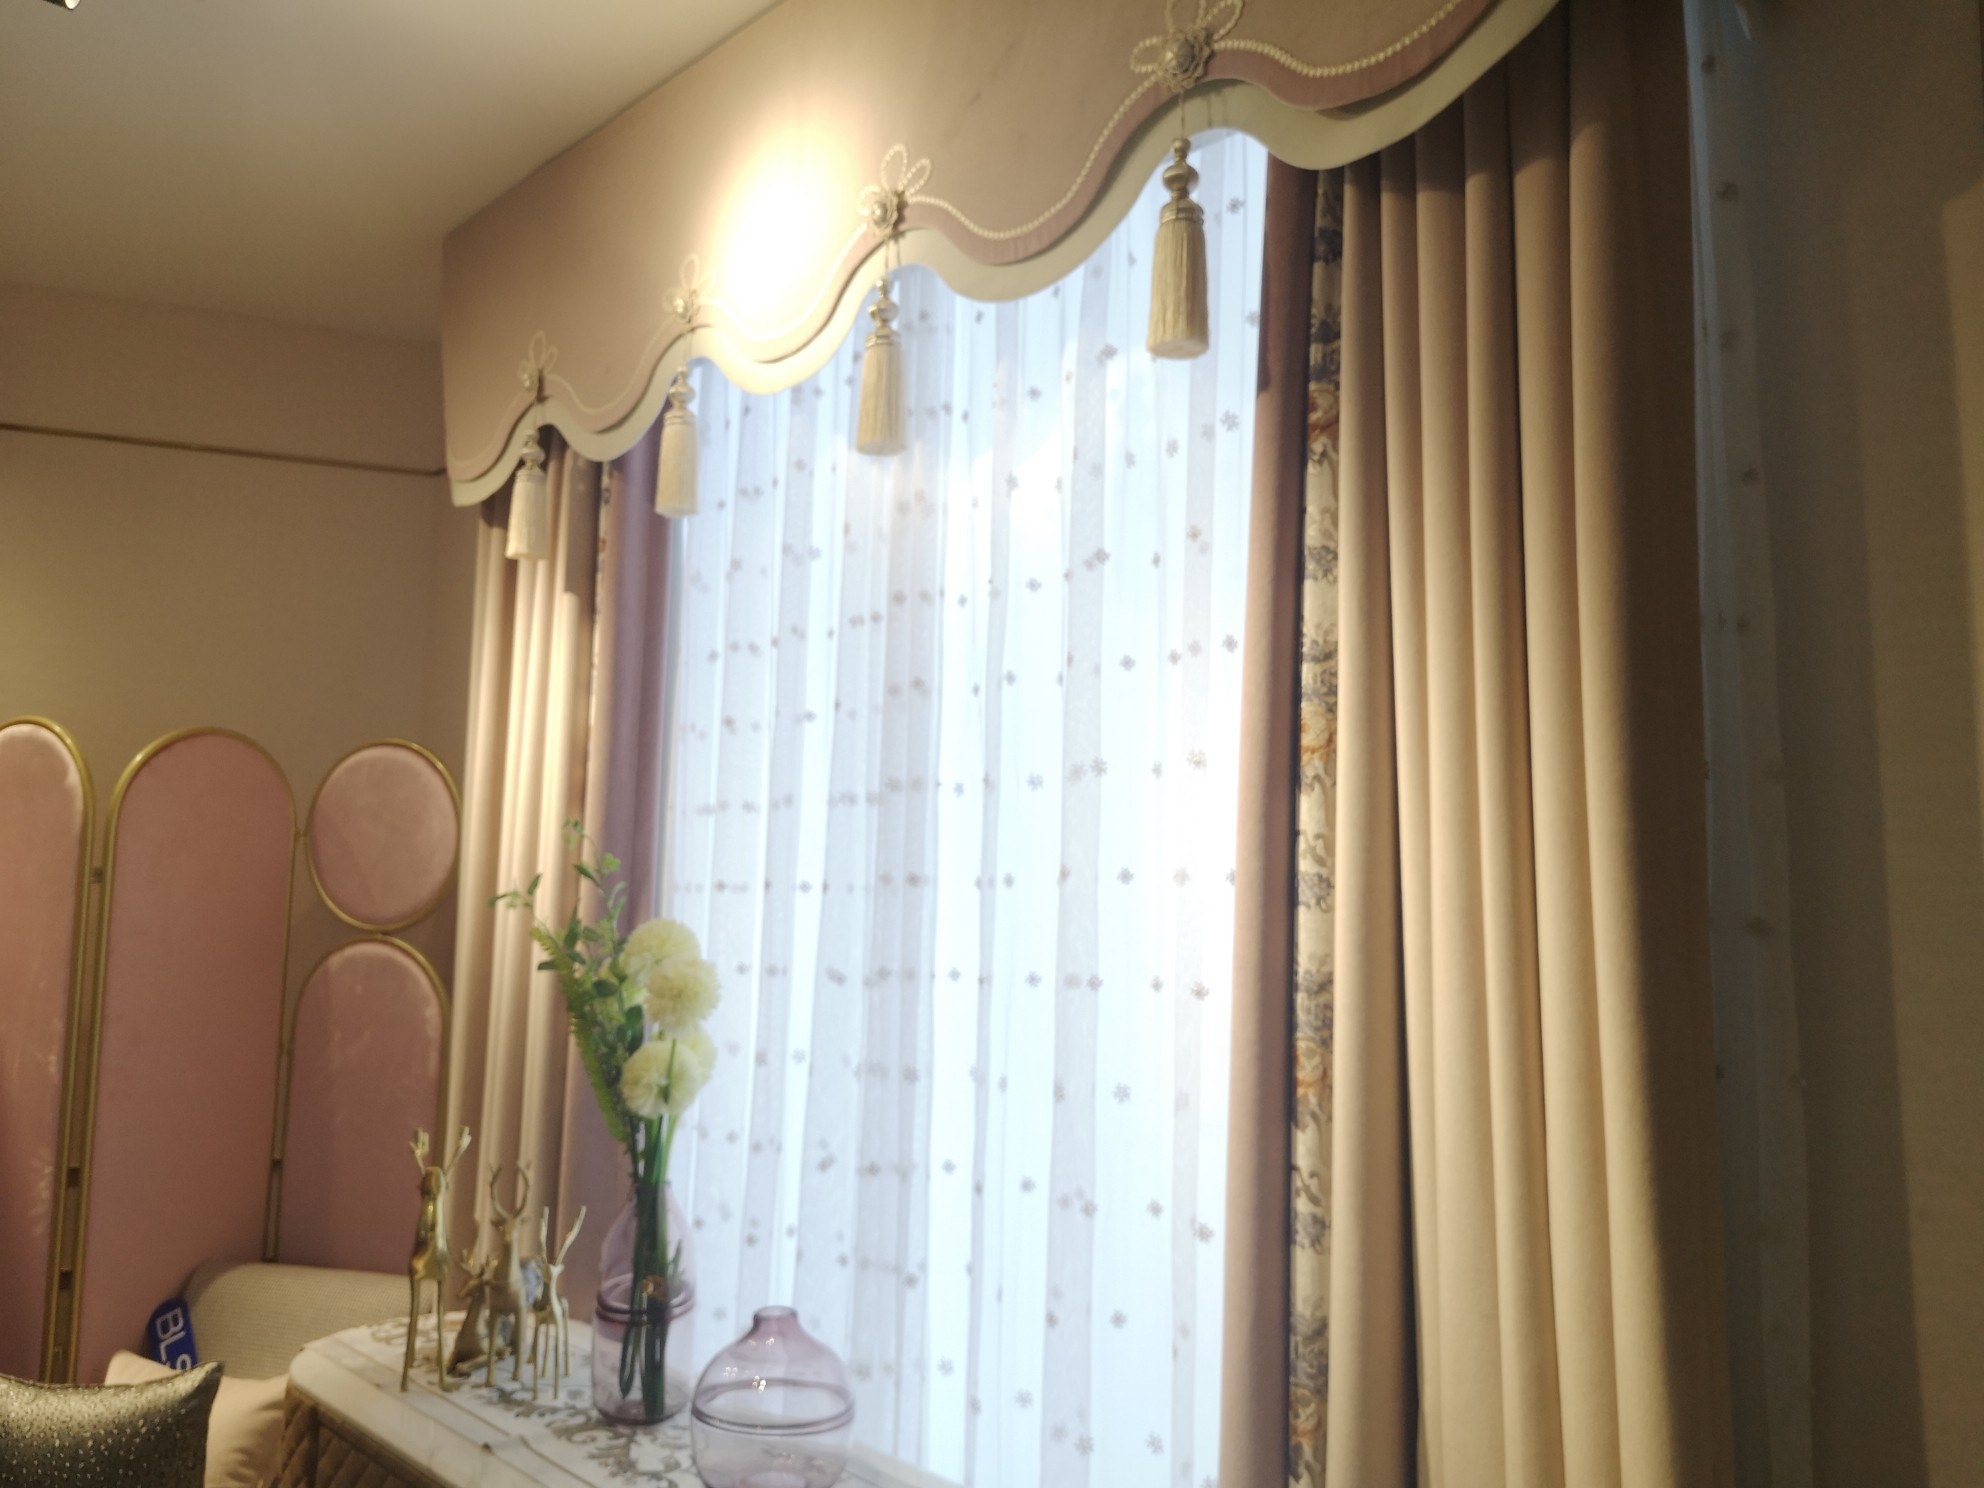 布朗斯少女风欧式风格拼接卧室窗帘高贵大气遮光价格为380元/米